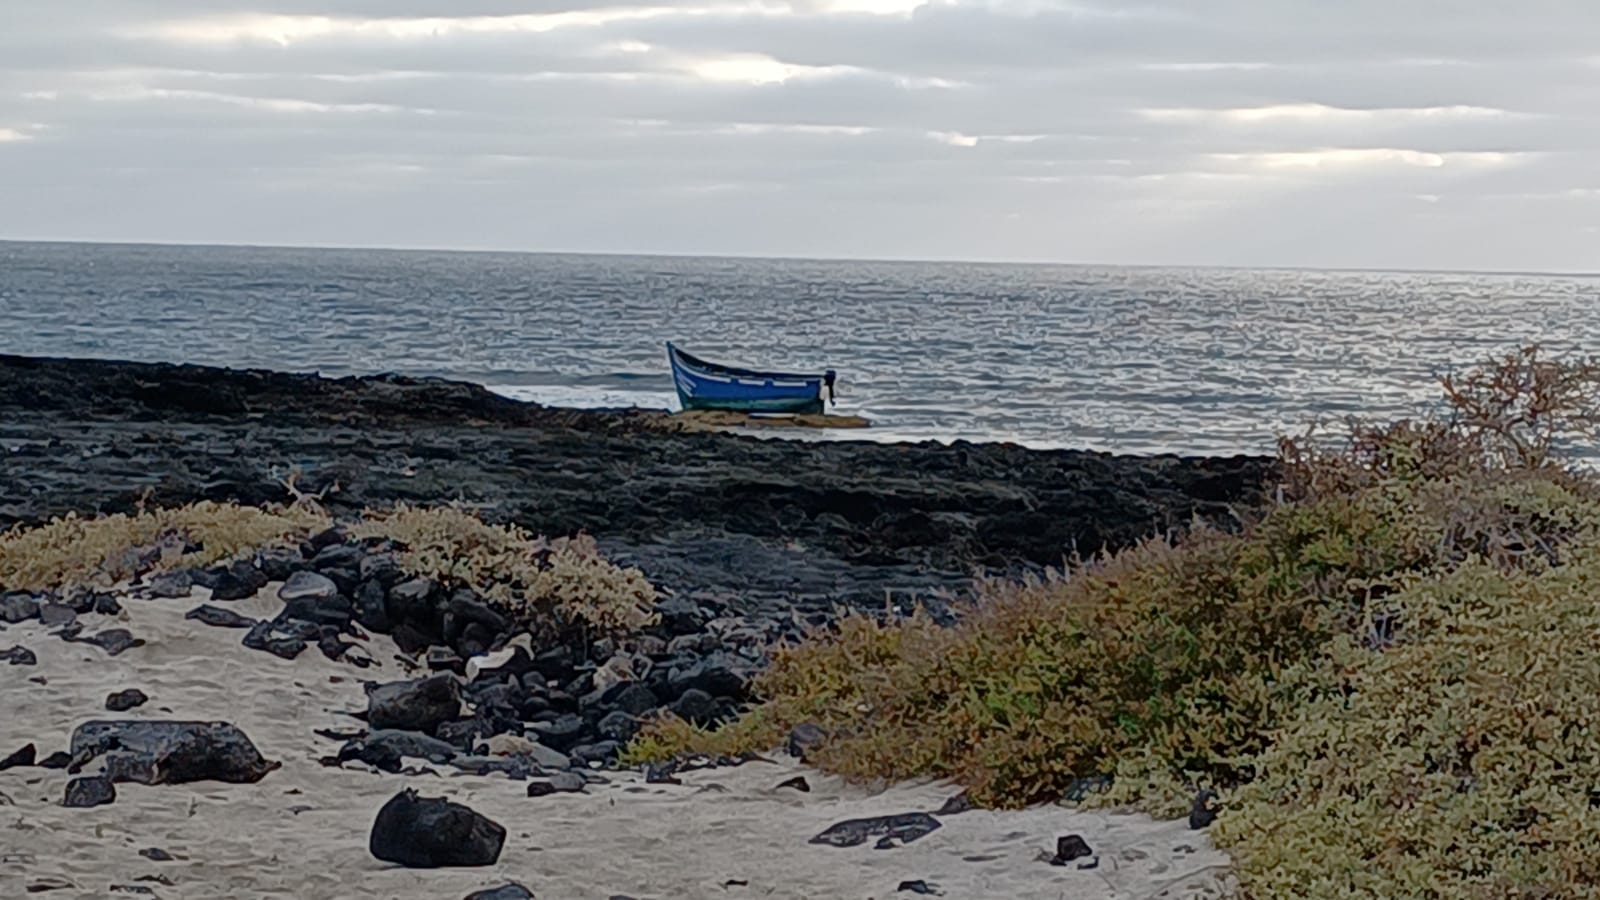 Esta madrugada ha llegado una patera con 20 migrantes magrebíes a la costa norte de Lanzarote. Llegaron por sus propios medios a Punta de Mujeres, en Haría